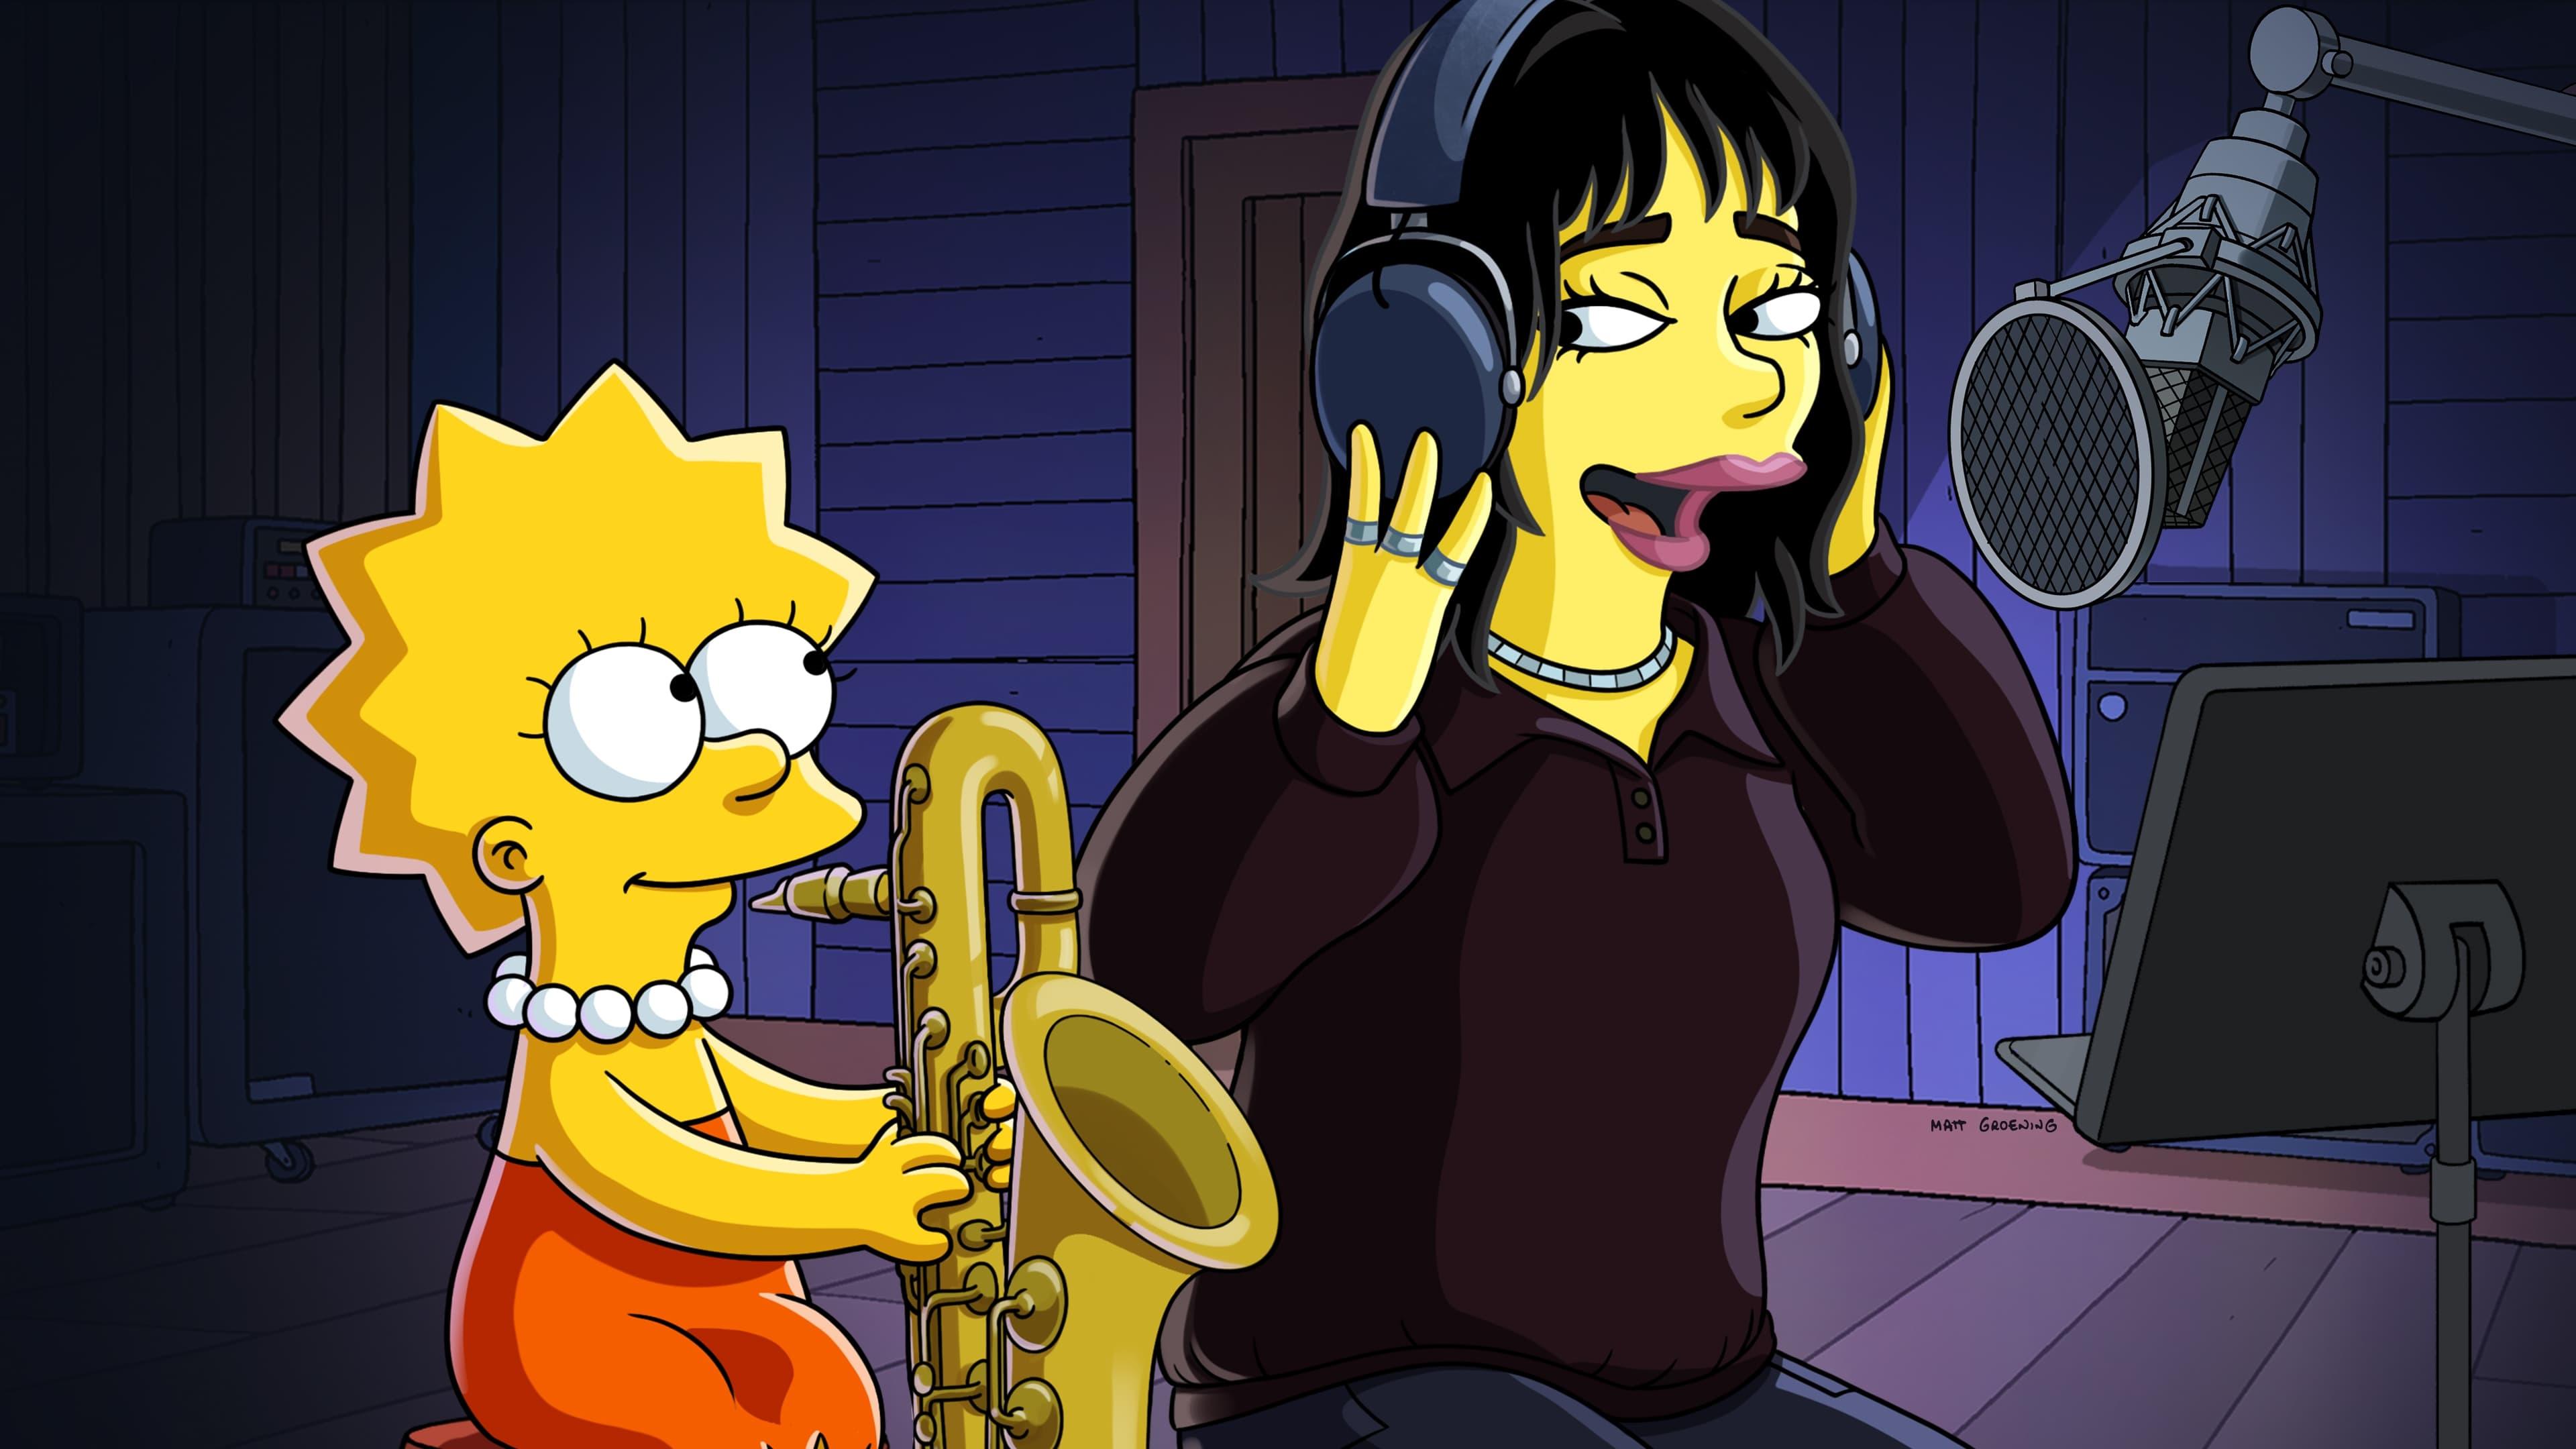 The Simpsons: When Billie Met Lisa backdrop